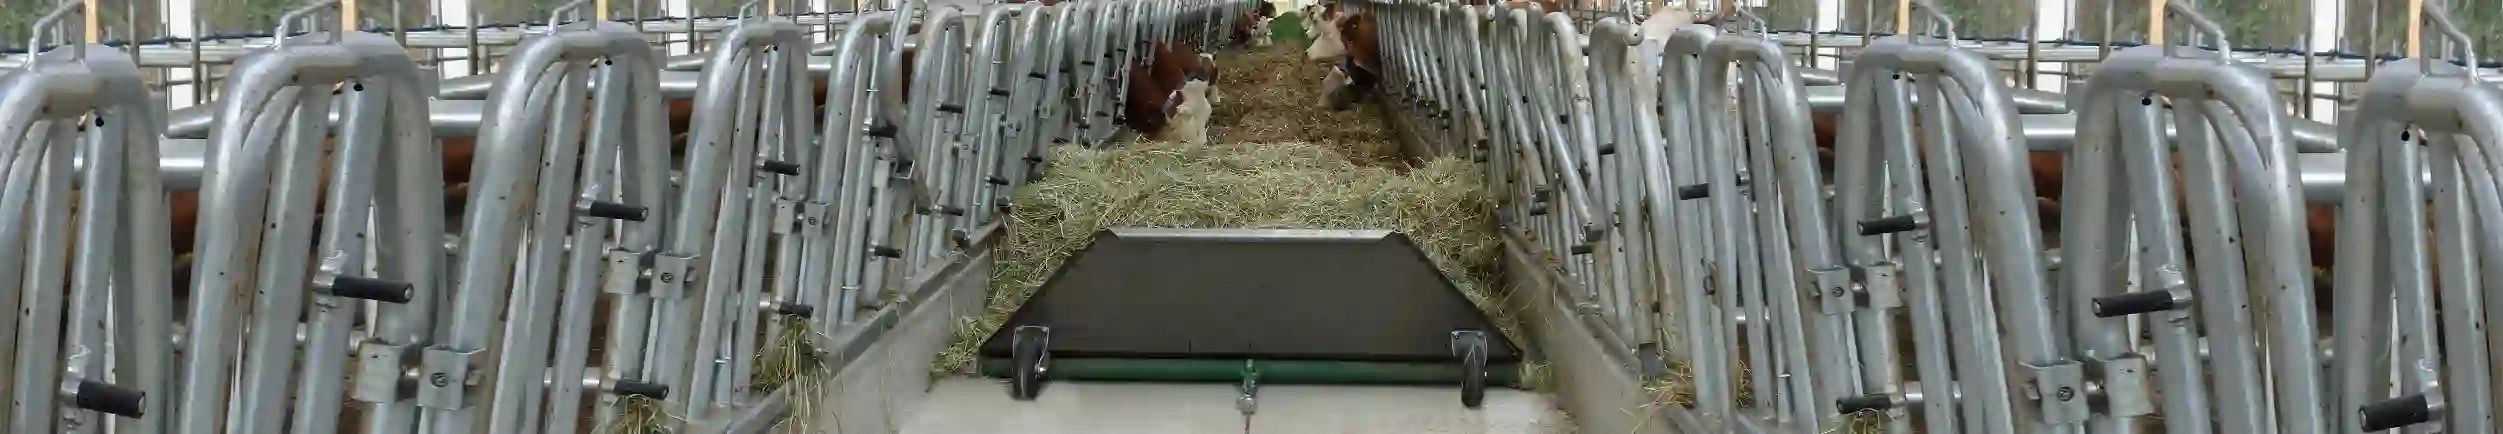 Bild des Futterbands in einem Stall mit Kühen 